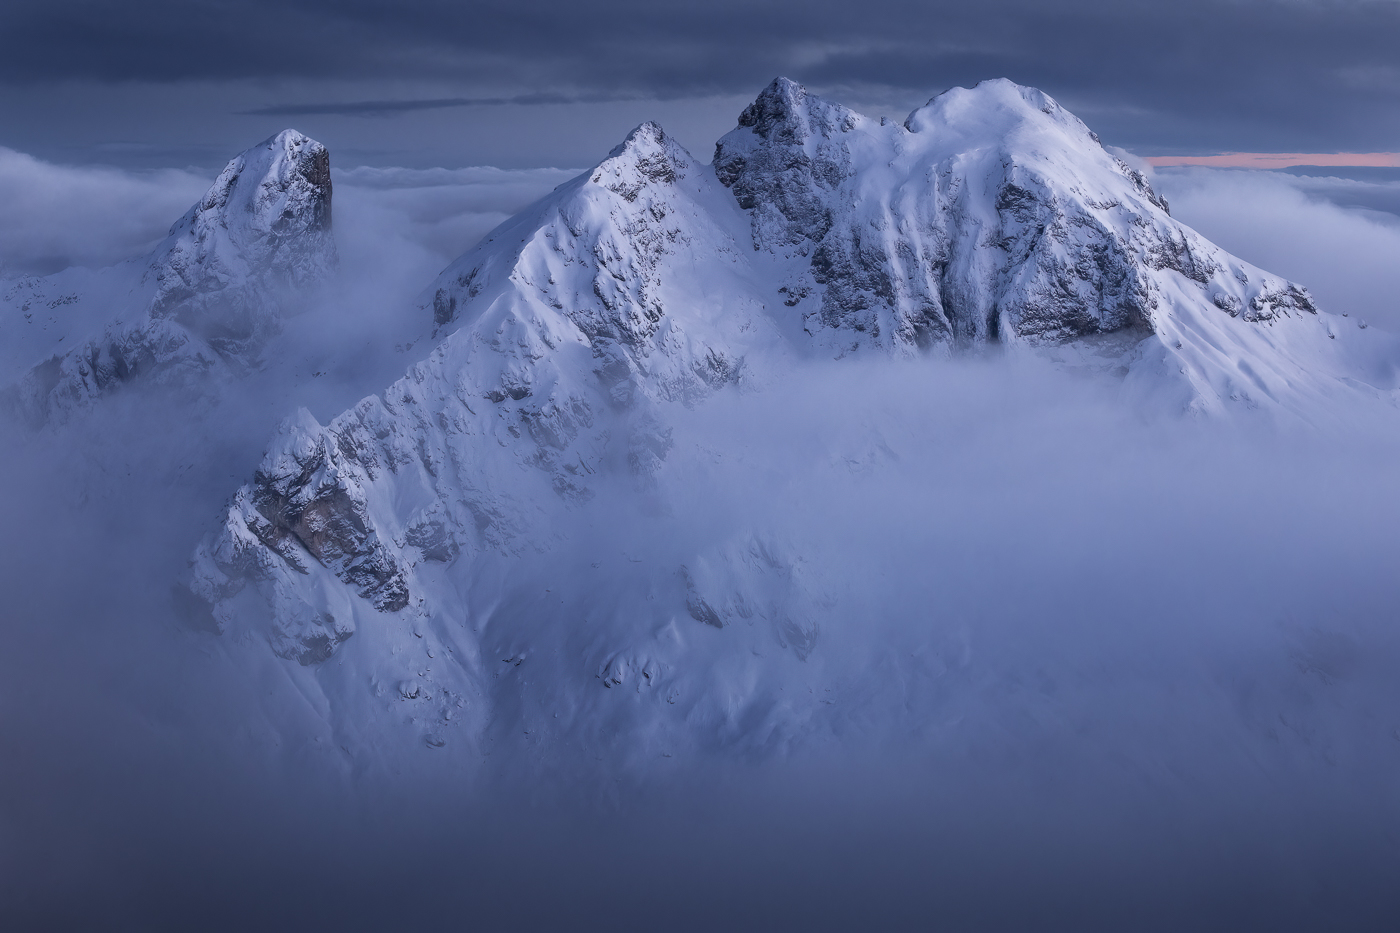 Cime sagomate dallo scenario invernale emergono da un mare di nubi per diventare anch’esse protagoniste dell’ora blu. Dolomiti Ampezzane, Italia.